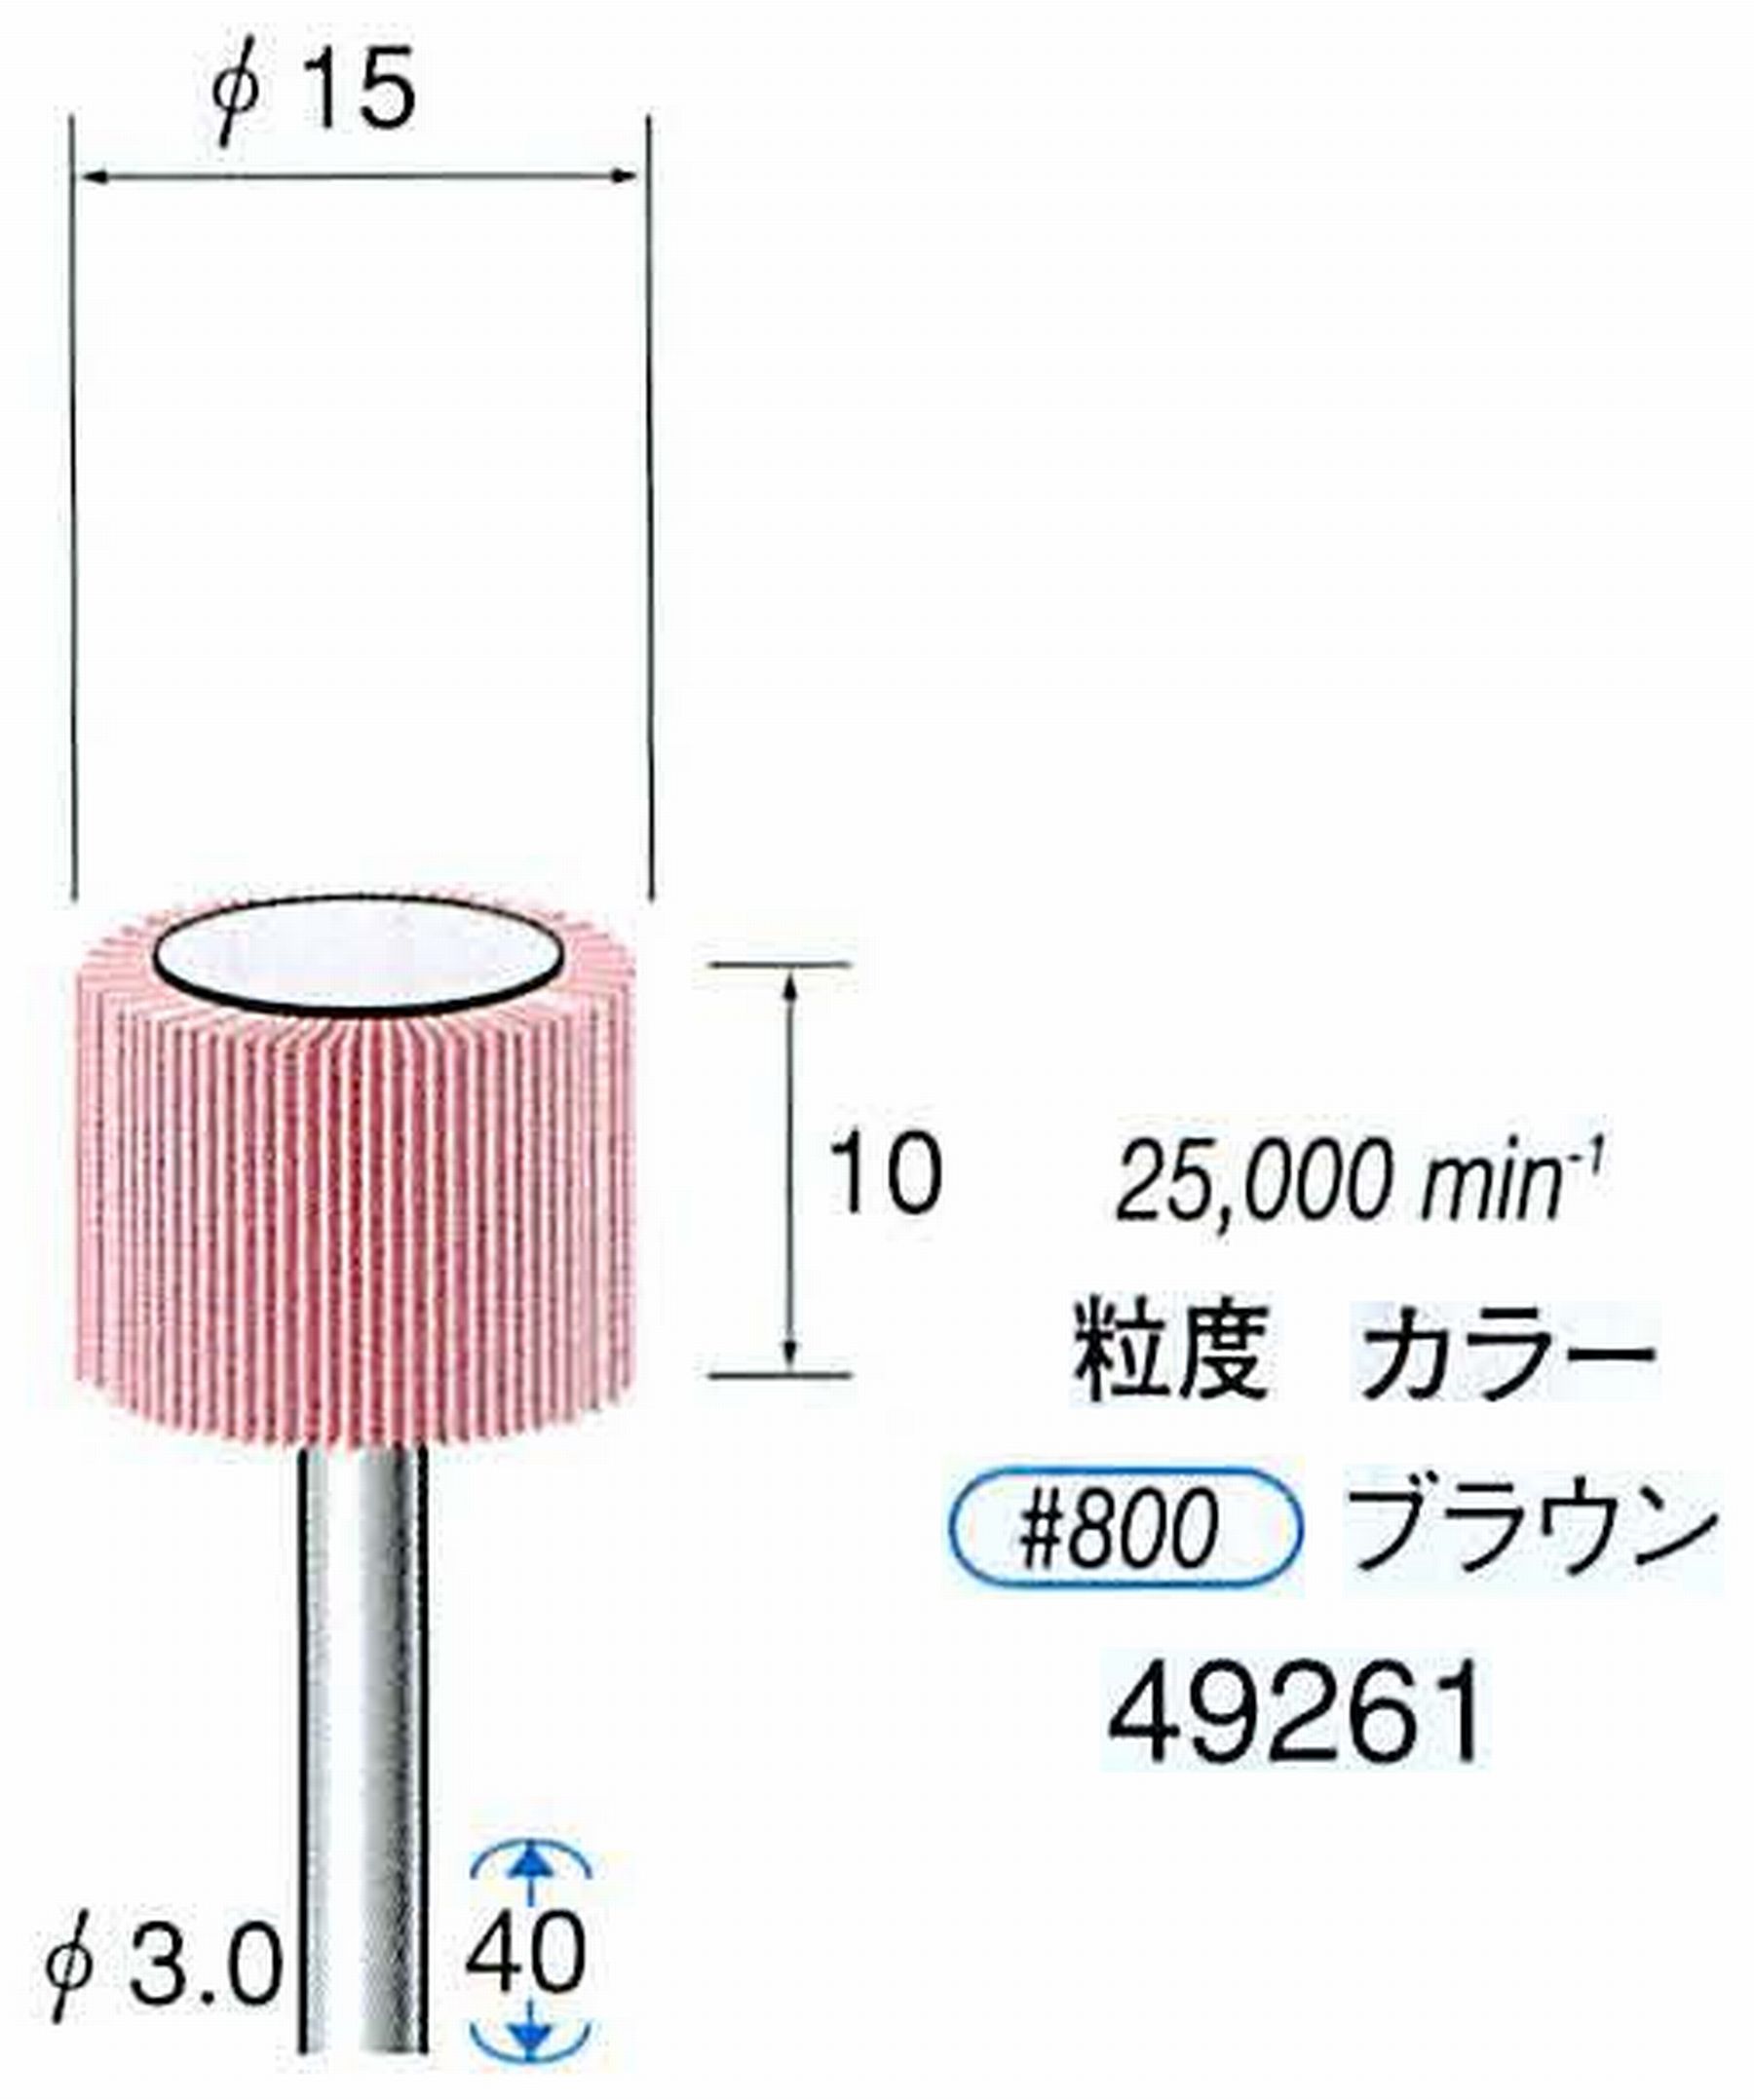 ナカニシ/NAKANISHI ファイン フラップサンダー 軸径(シャンク)φ3.0mm 49261